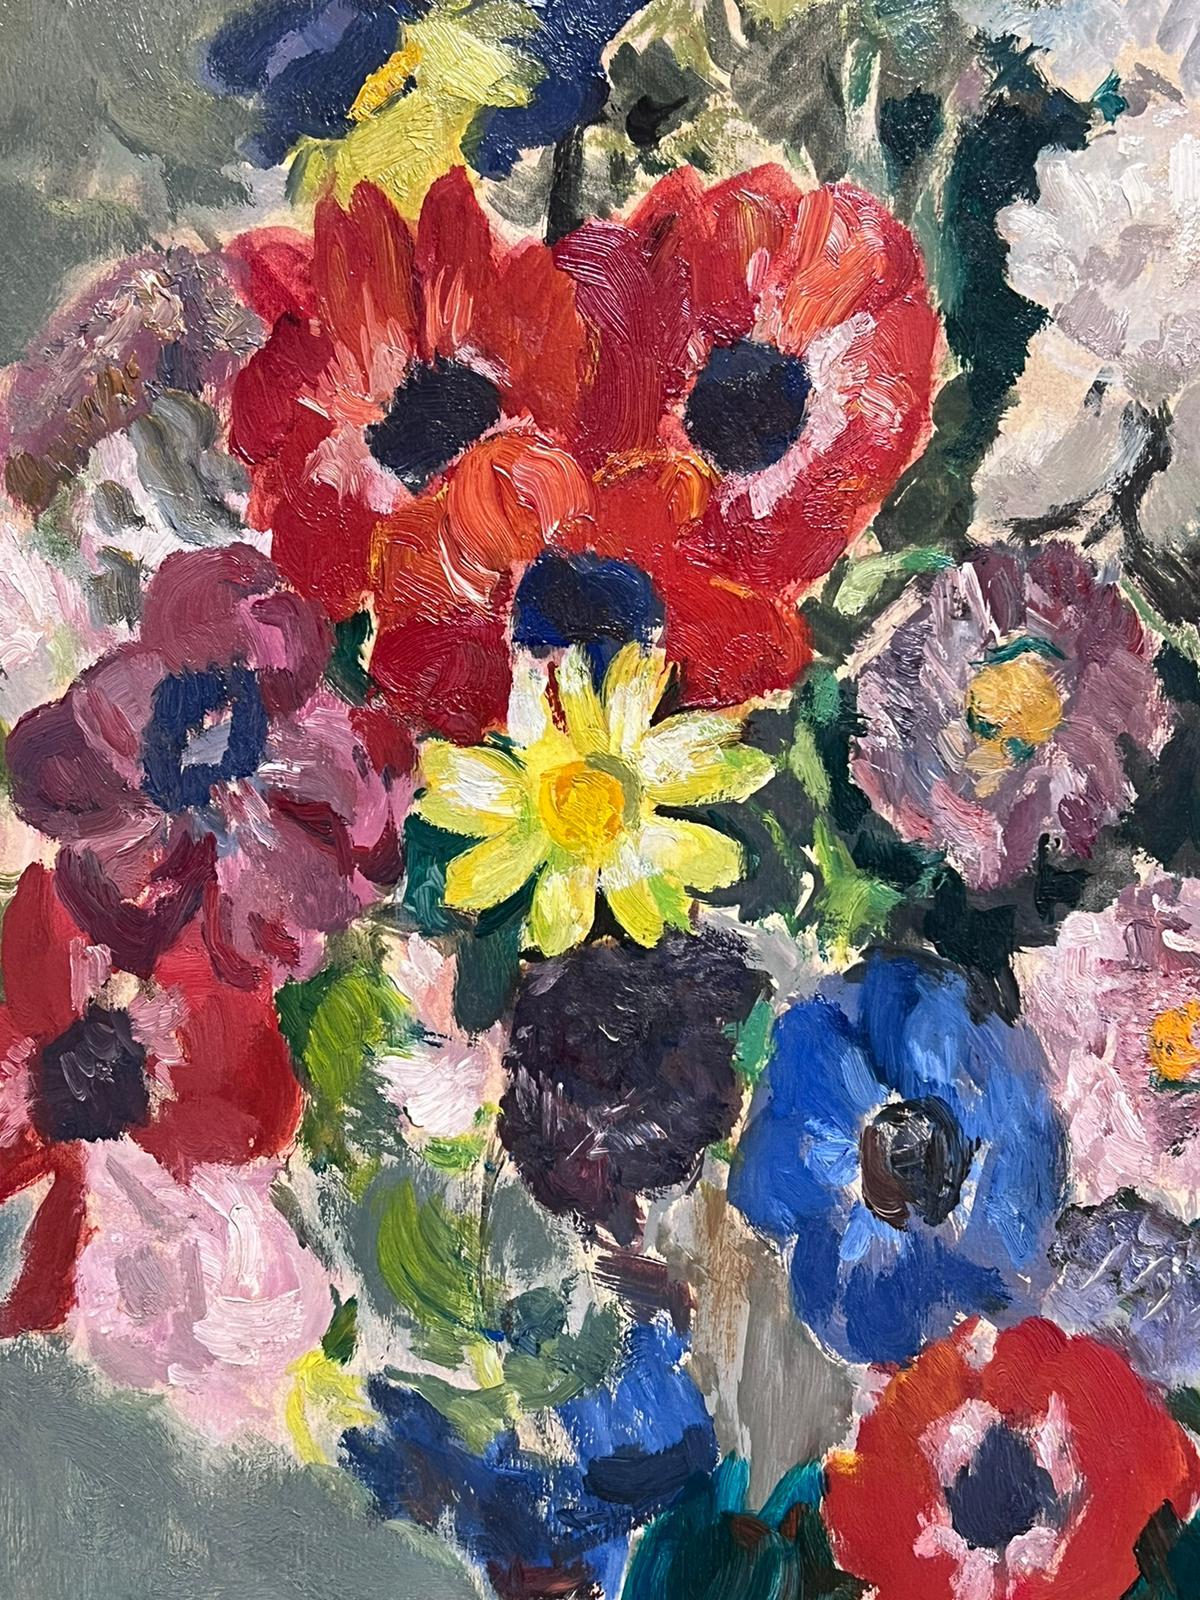 female artist that paints flowers